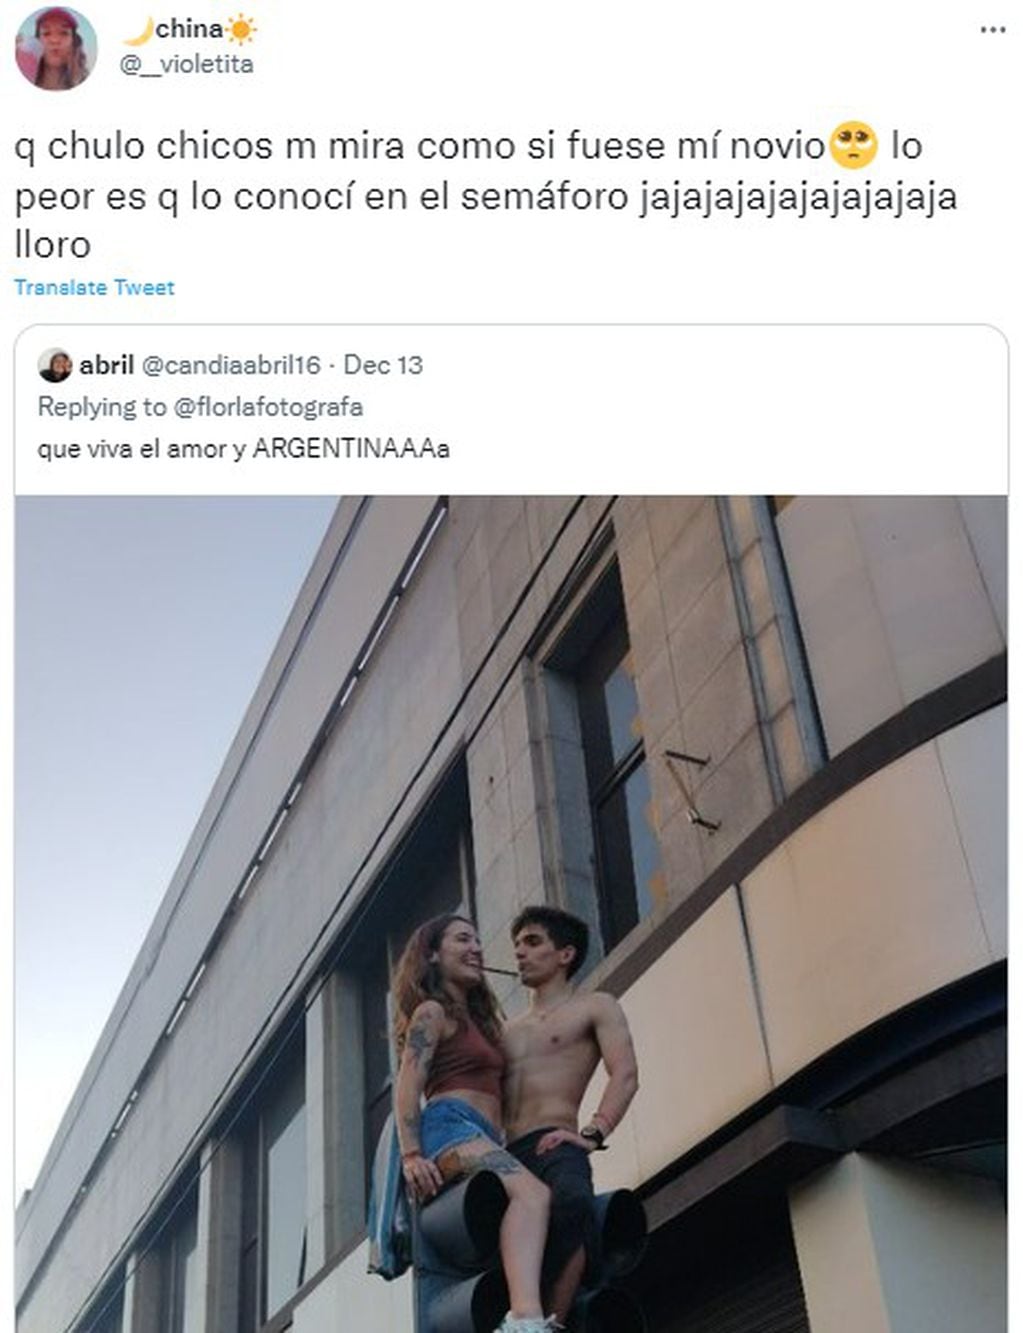 La verdad detrás del beso viral arriba de un semáforo en La Plata.